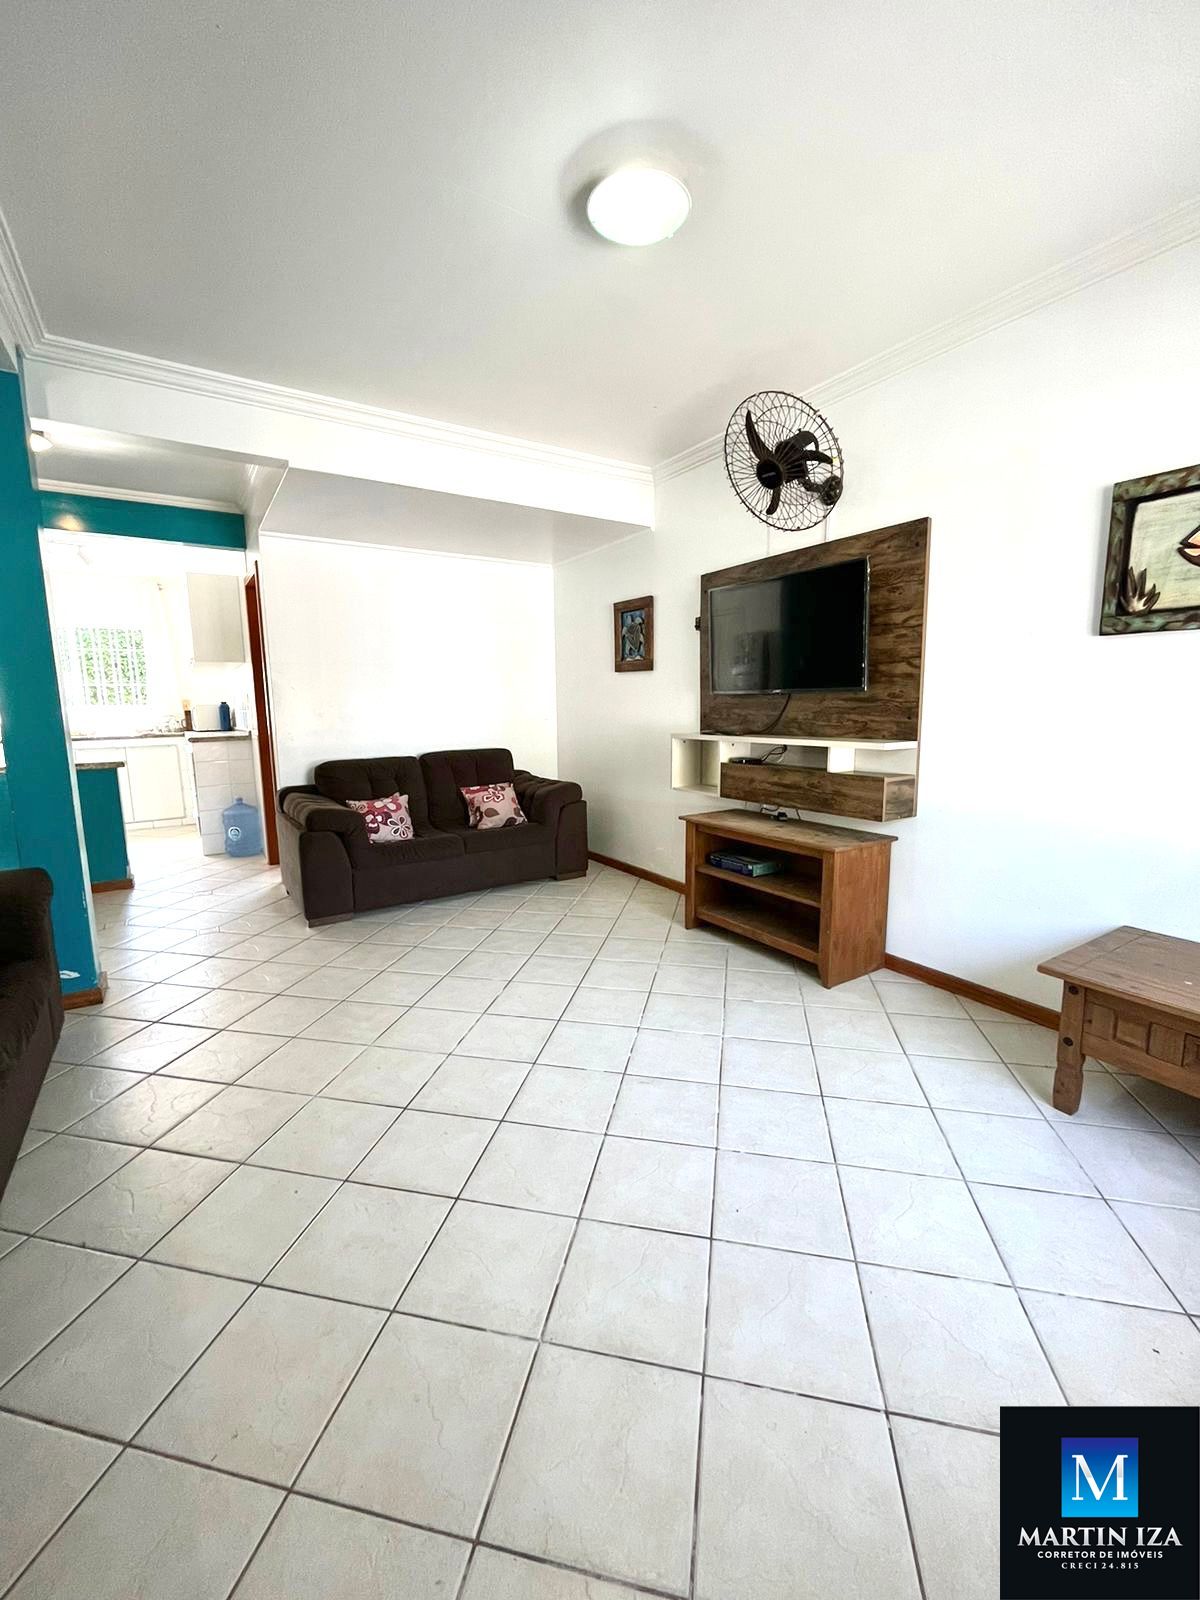 Apartamento com 3 Dormitórios para alugar, 99 m² por R$ 1.000,00